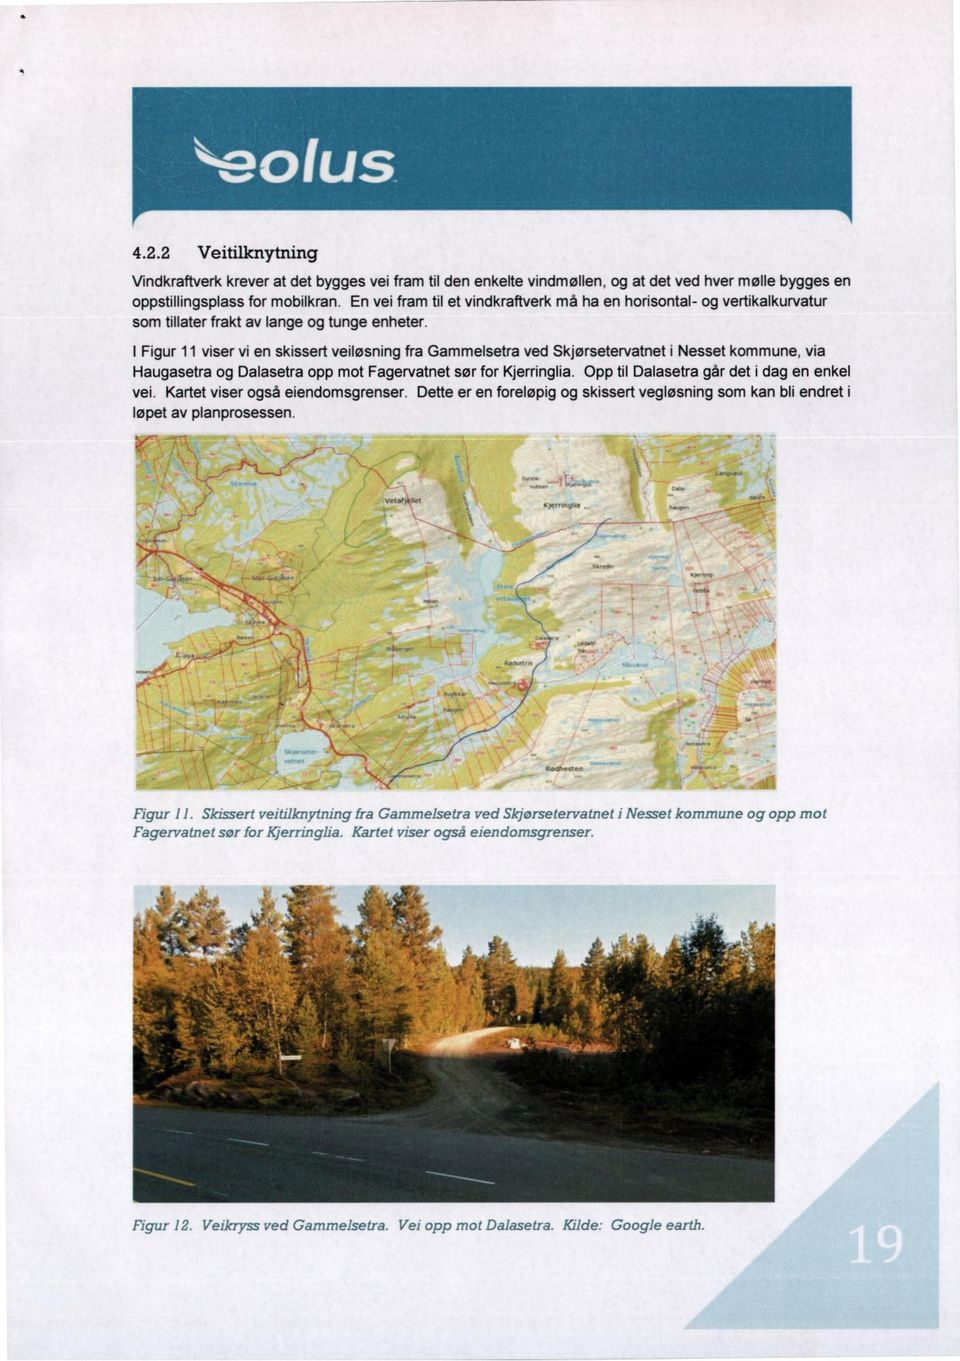 I Figur 11 viser vi en skissert veiløsning fra Gammelsetra ved Skjørsetervatnet i Nesset kommune, via Haugasetra og Dalasetra opp mot Fagervatnet sør for Kjerringlia.